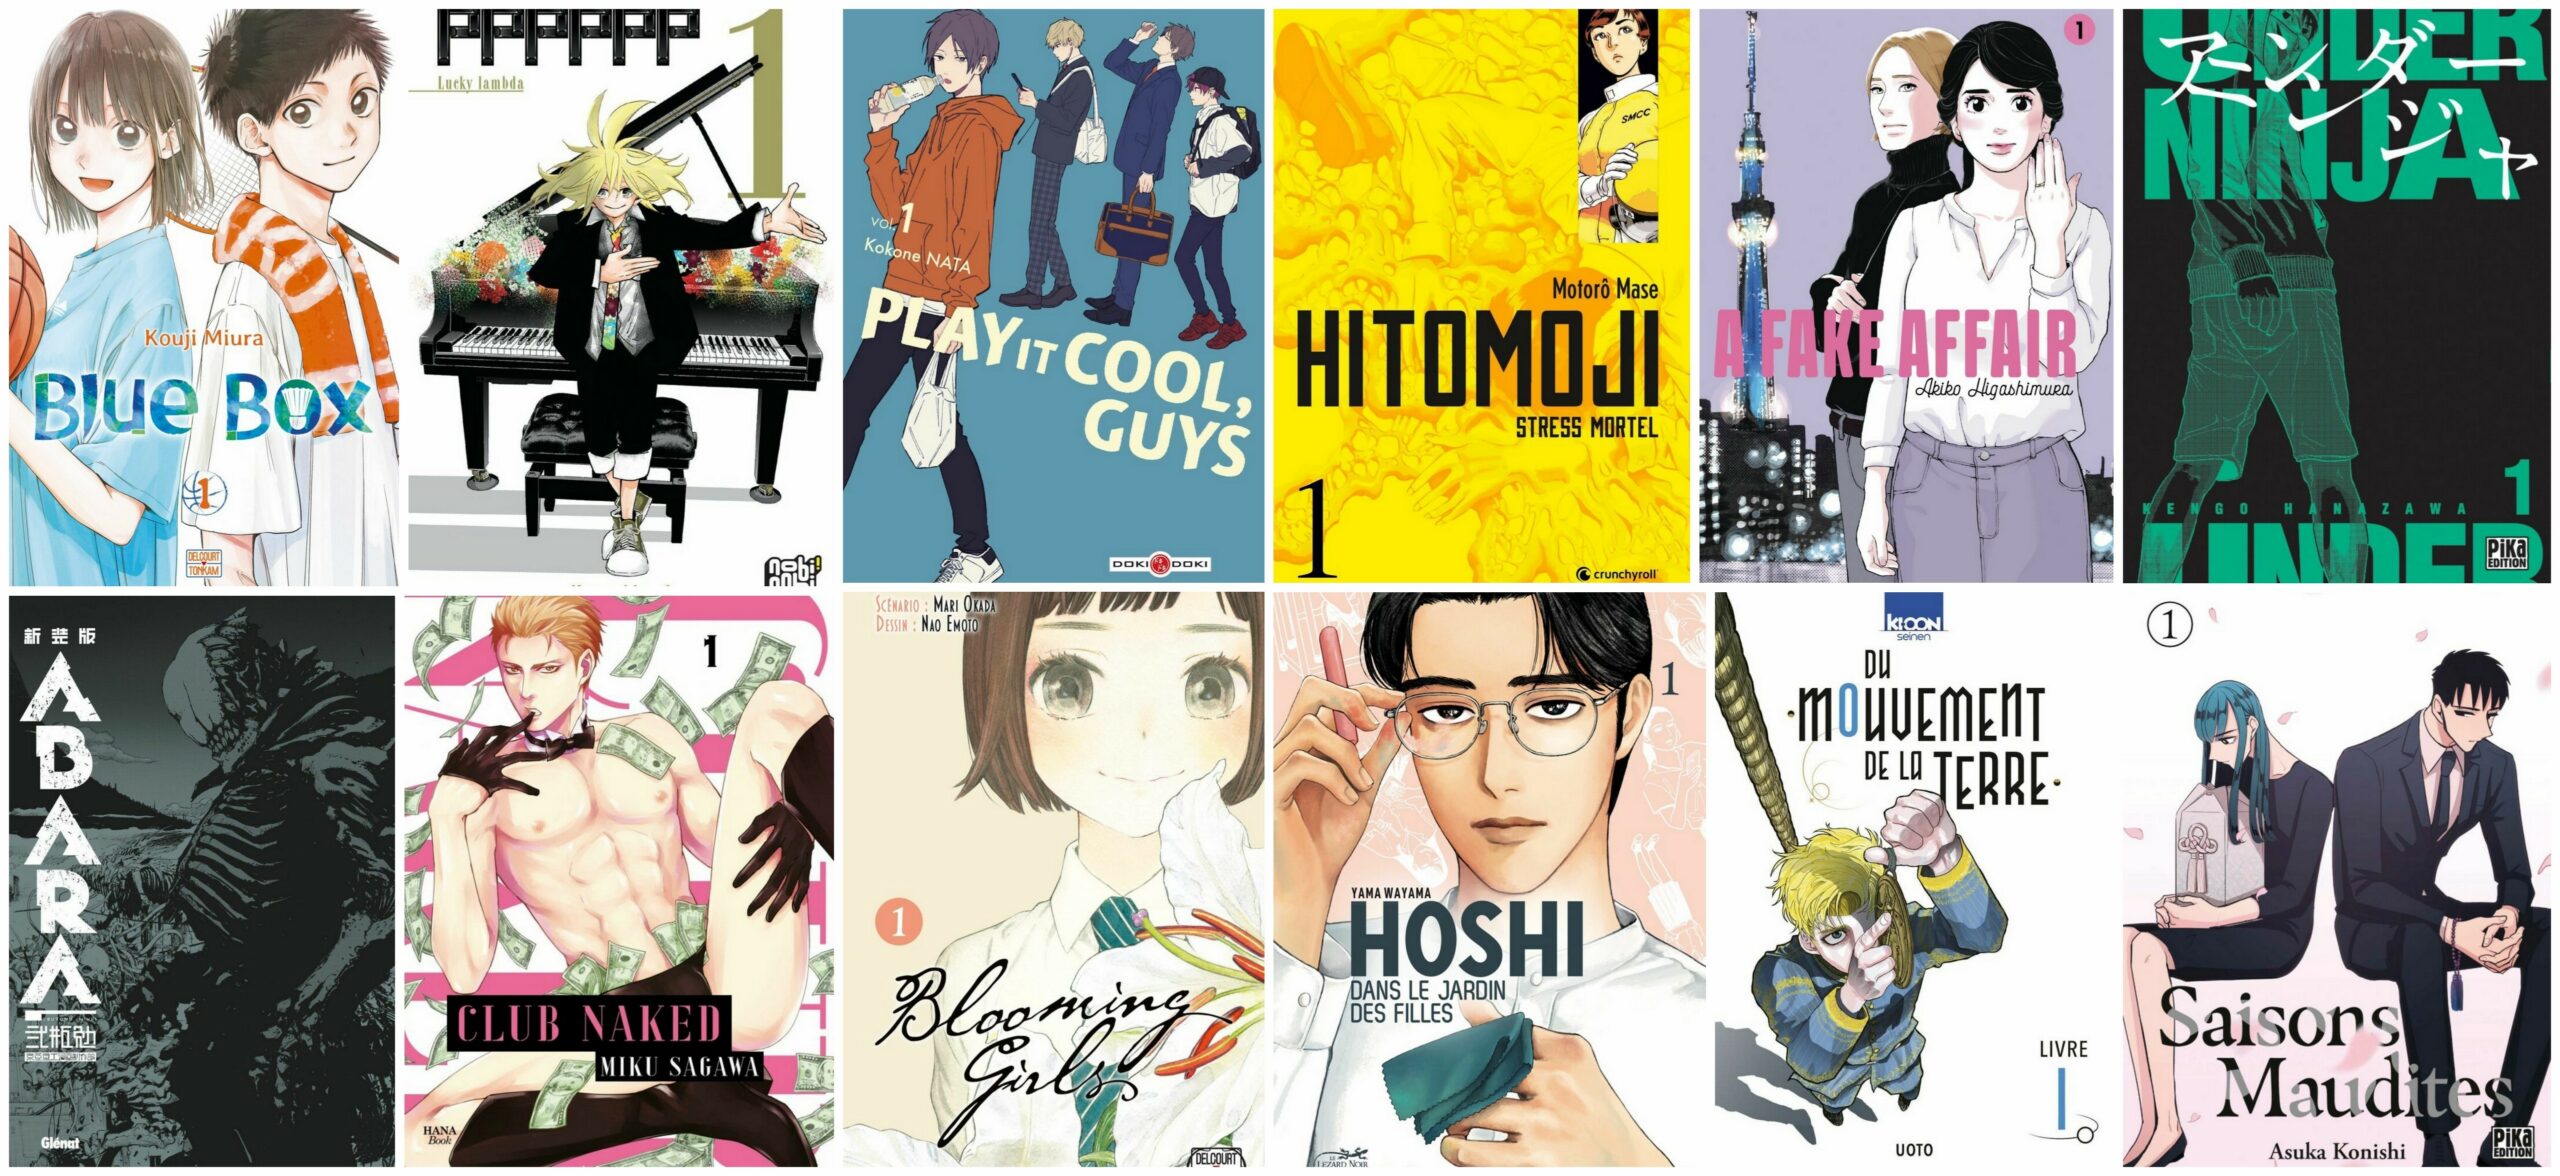 Planning des sorties des éditions collectors et limitées de mangas du mois  de juillet 2023 - Margxt